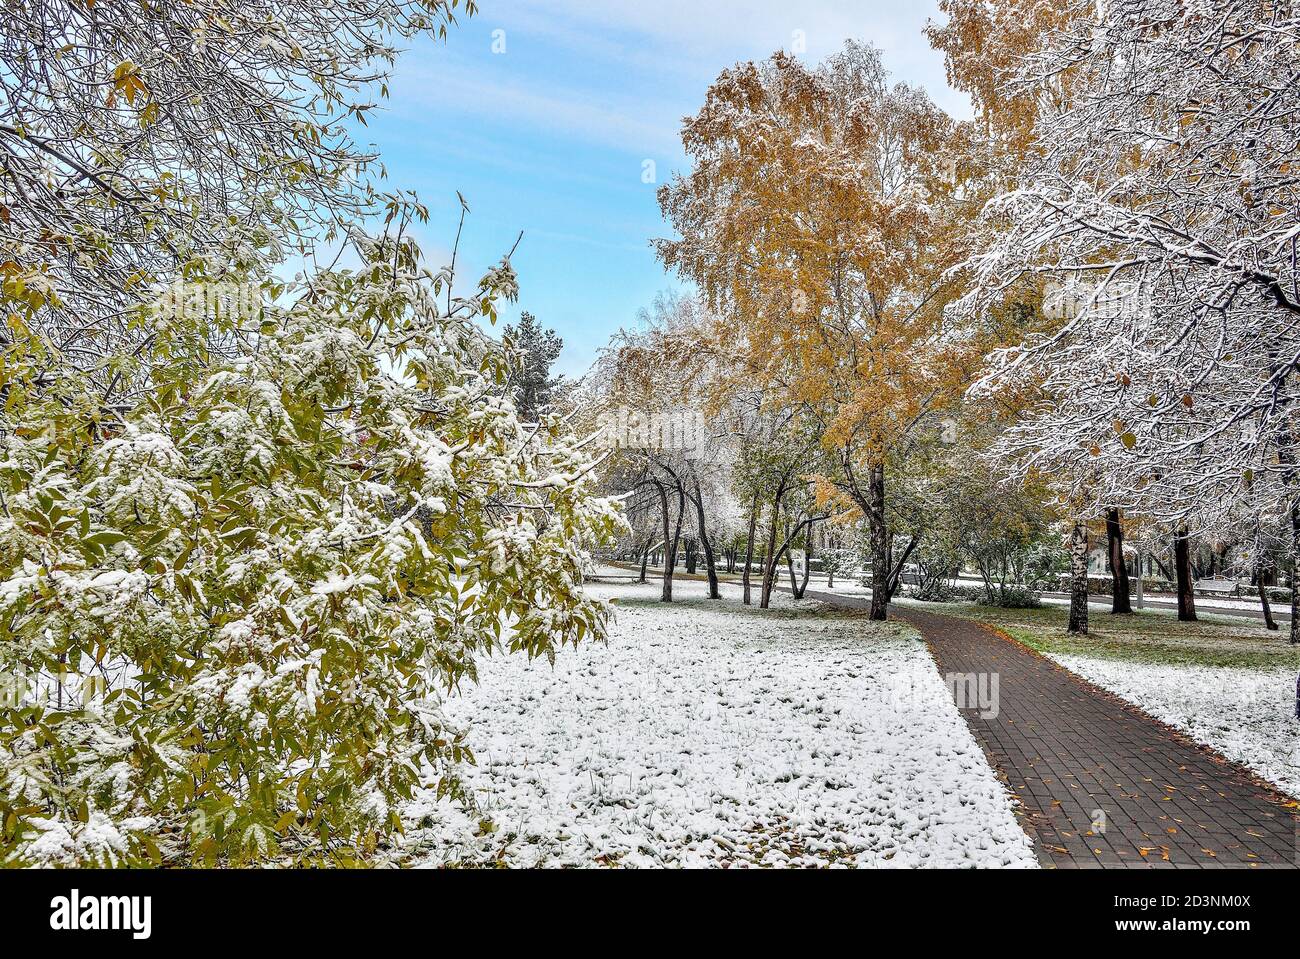 Première chute de neige dans le parc de la ville d'automne coloré. Neige blanche et moelleuse couverte de feuillage doré, rouge, vert et buissons. Changement de saison - conte de fées de Banque D'Images